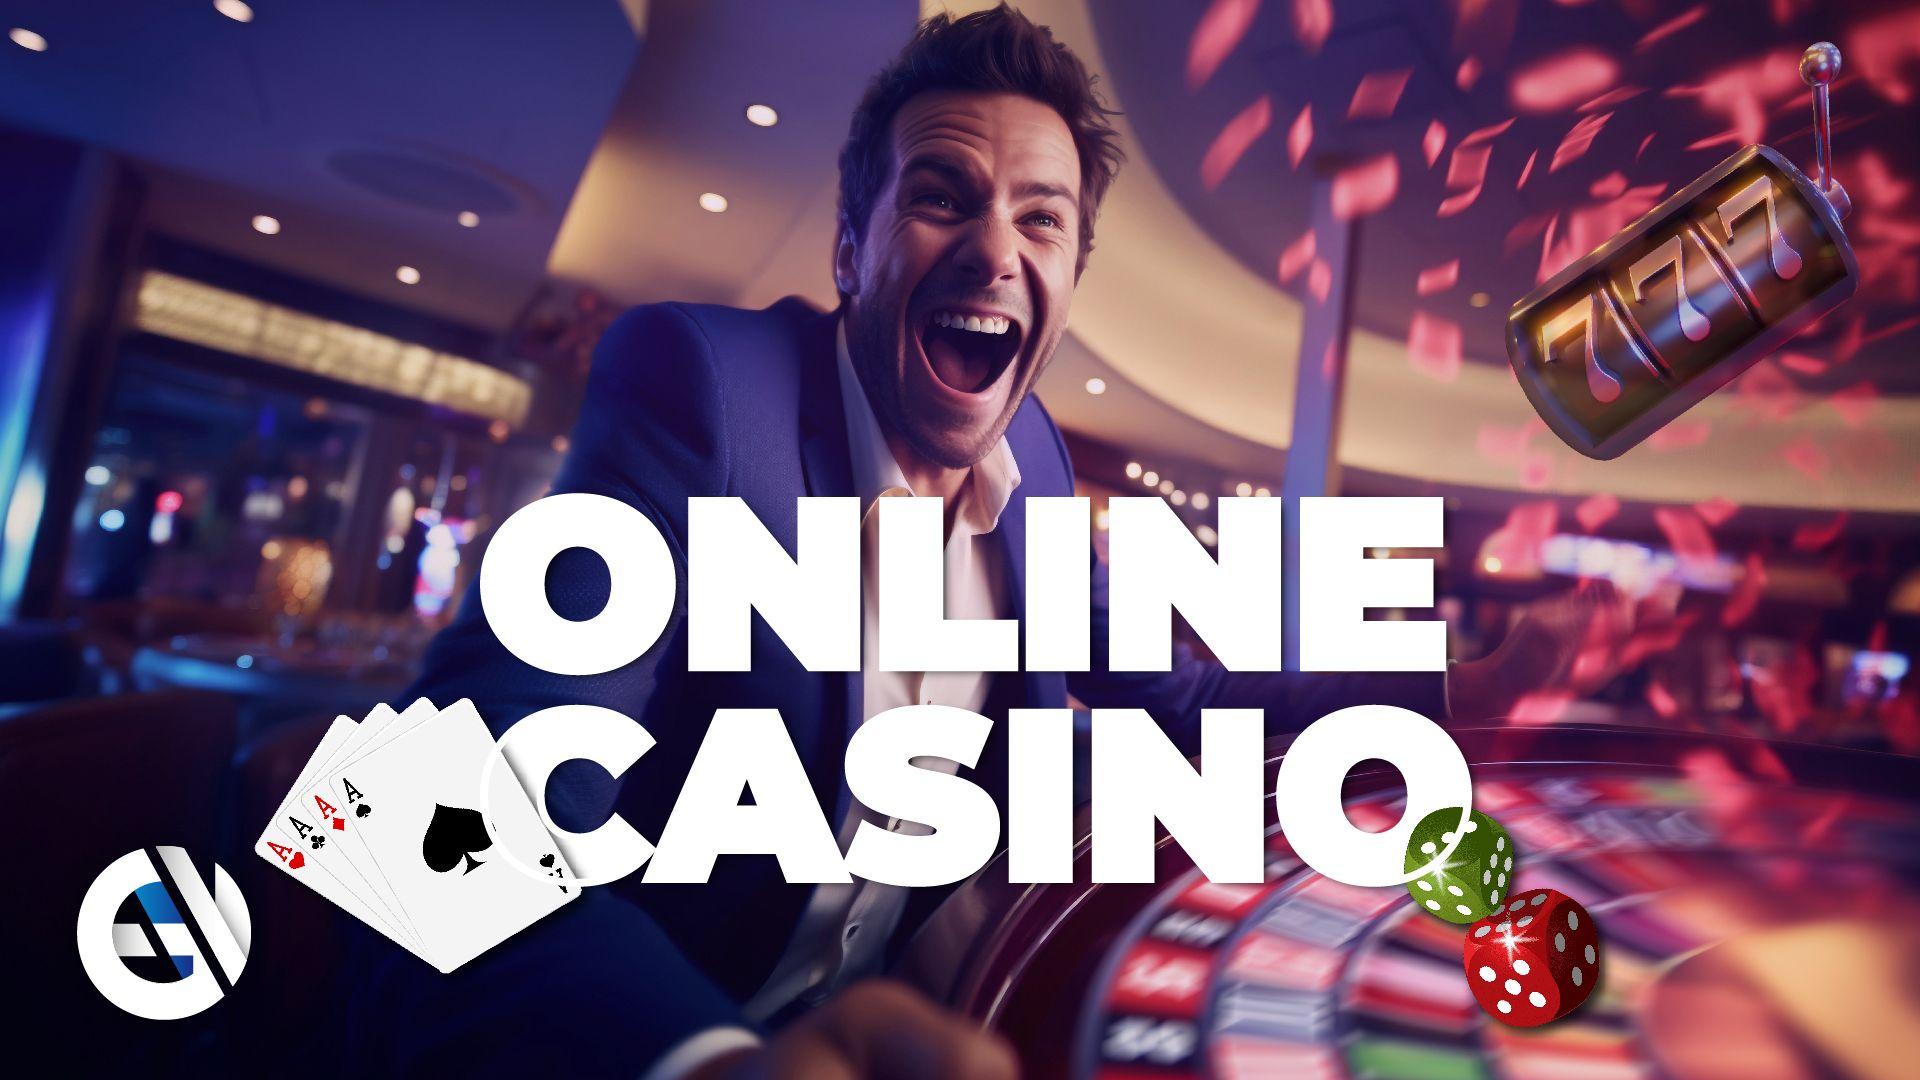 Como encontrar e escolher entre os casinos online mais recentes - Os aspectos mais importantes a verificar antes de jogar